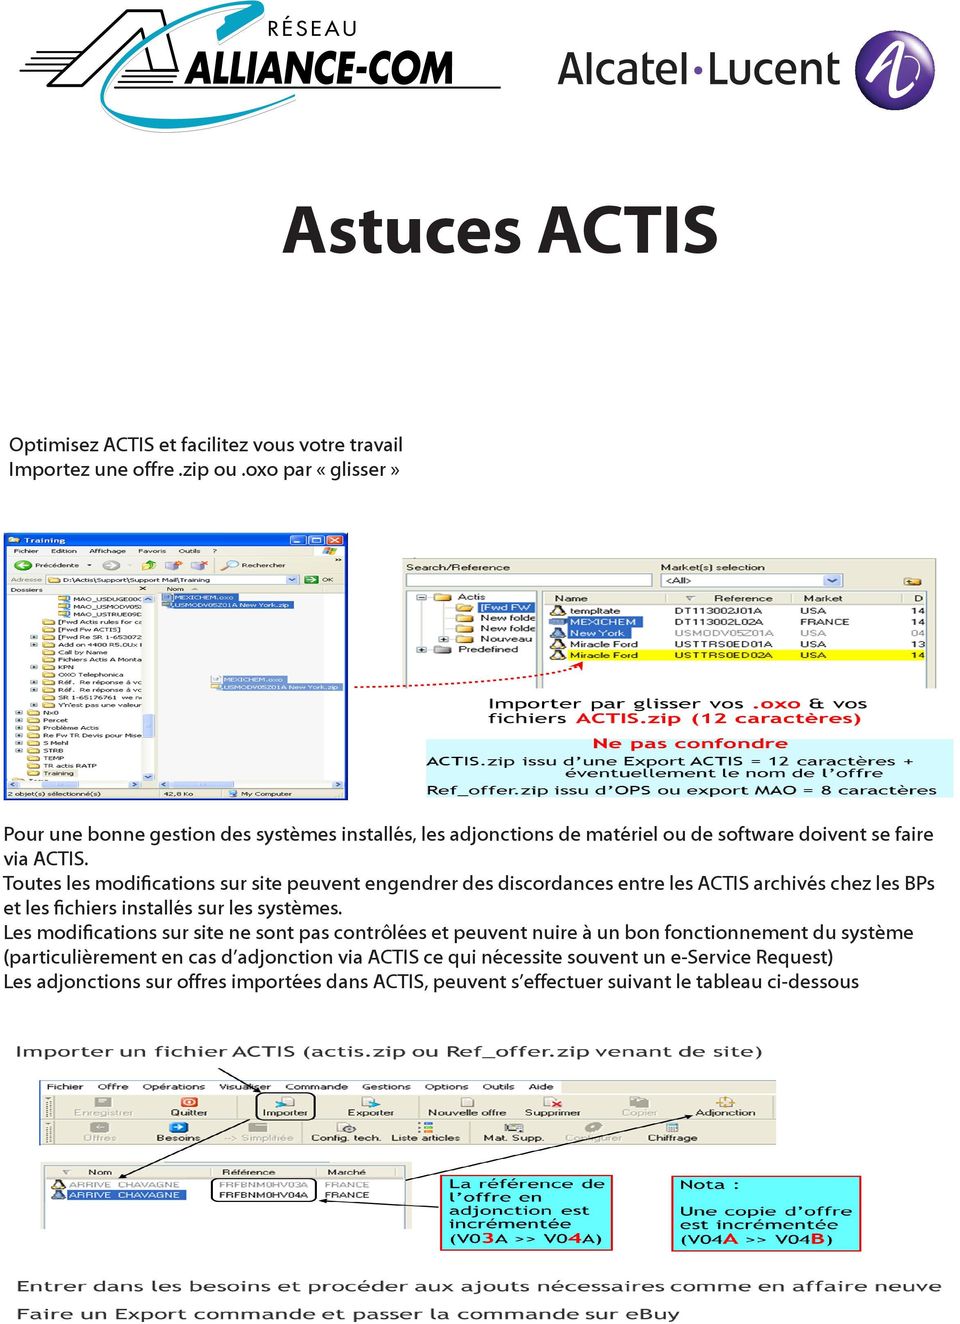 Toutes les modifications sur site peuvent engendrer des discordances entre les ACTIS archivés chez les BPs et les fichiers installés sur les systèmes.